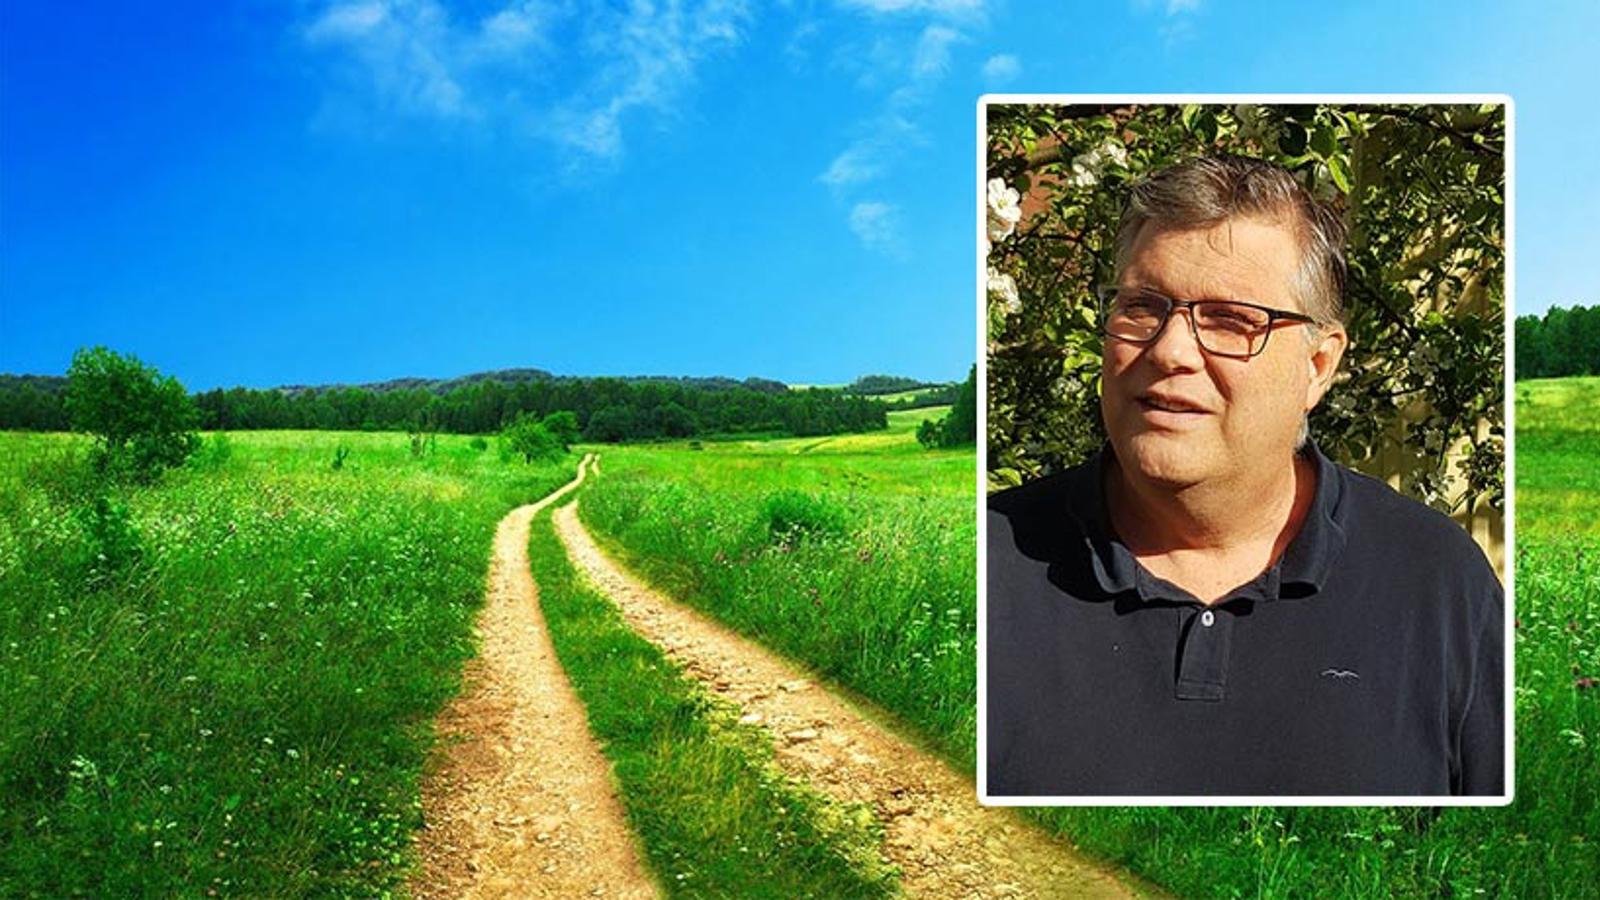 Till vänster: En stig på en stor grön äng. Till höger: Porträttbild av Peter Flodén som tittar till vänster om kameran.